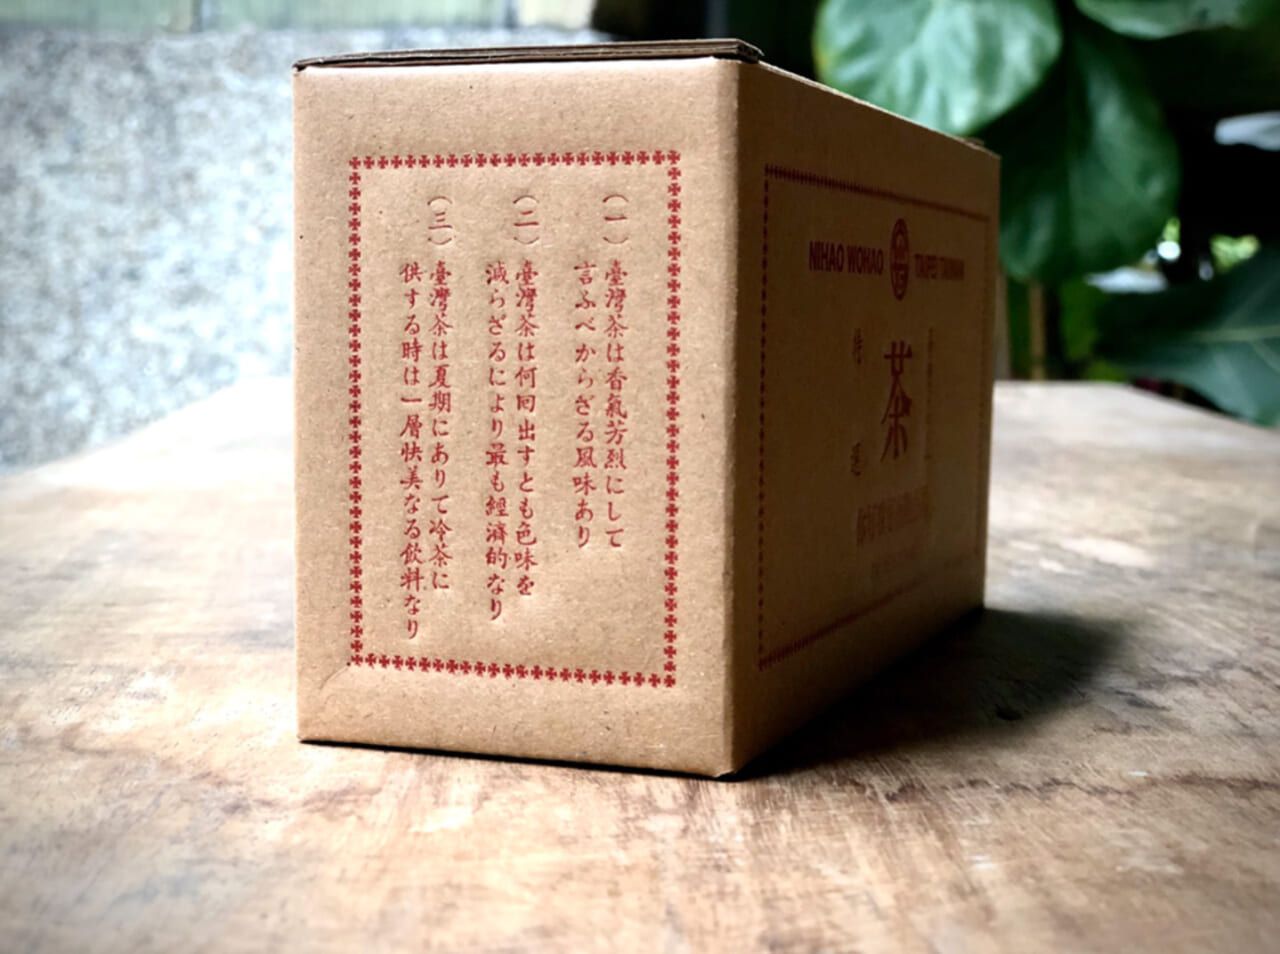 うちの店の特選茶の箱。日本統治時代に店のあるエリアは貿易港がありました。そこから出荷されていた茶の箱にあった文章を入れて、日星の活字を使うという、技術の結晶ものです。ダンボールの箱に活版印刷をするのは、けっこう大騒ぎ。中身のお茶も負けないくらい素晴らしいので、もしよろしければ買ってくださいね。